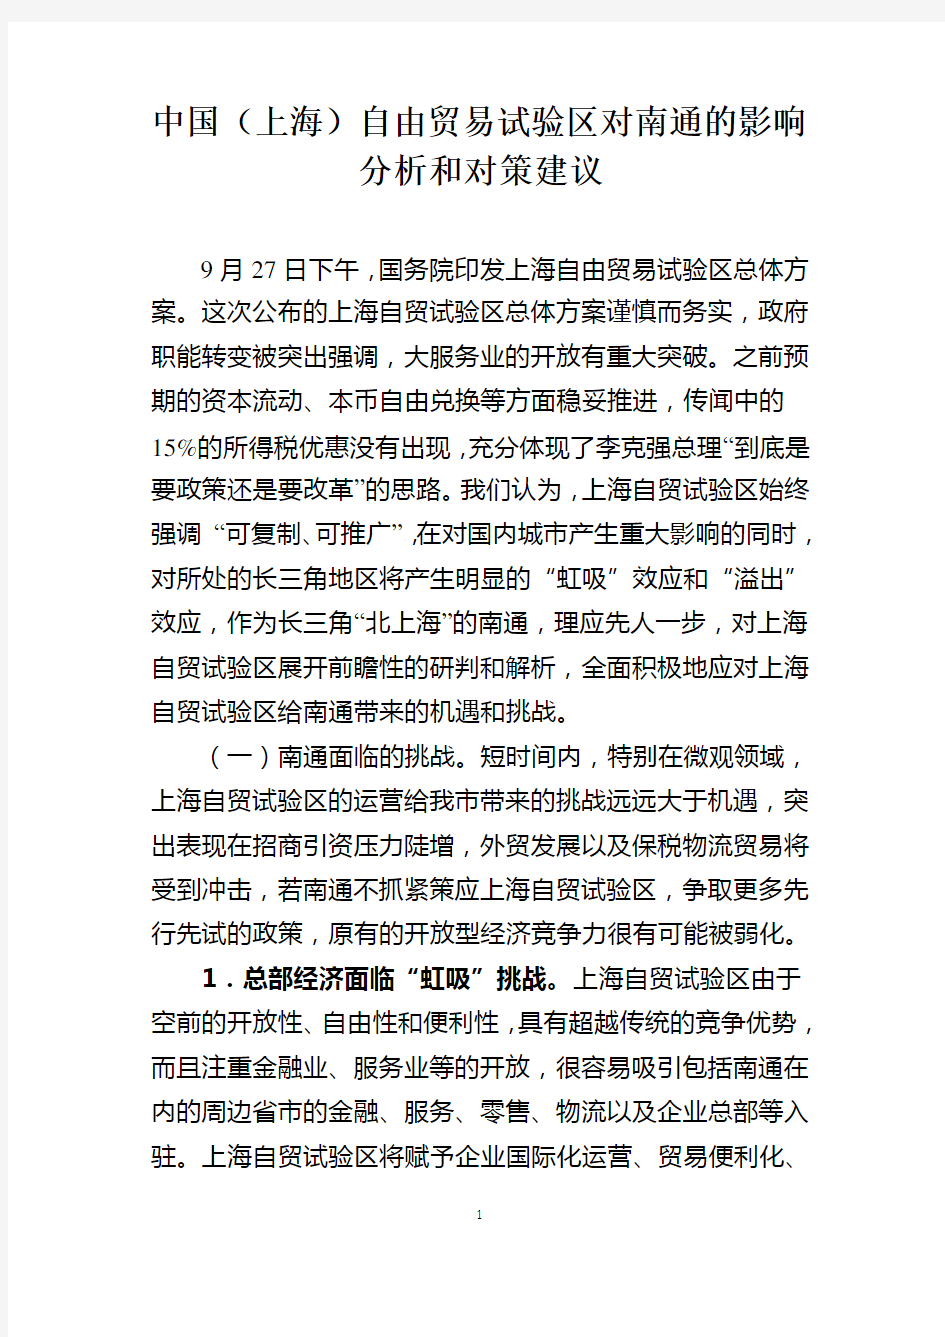 中国(上海)自由贸易试验区对南通的影响分析和对策建议